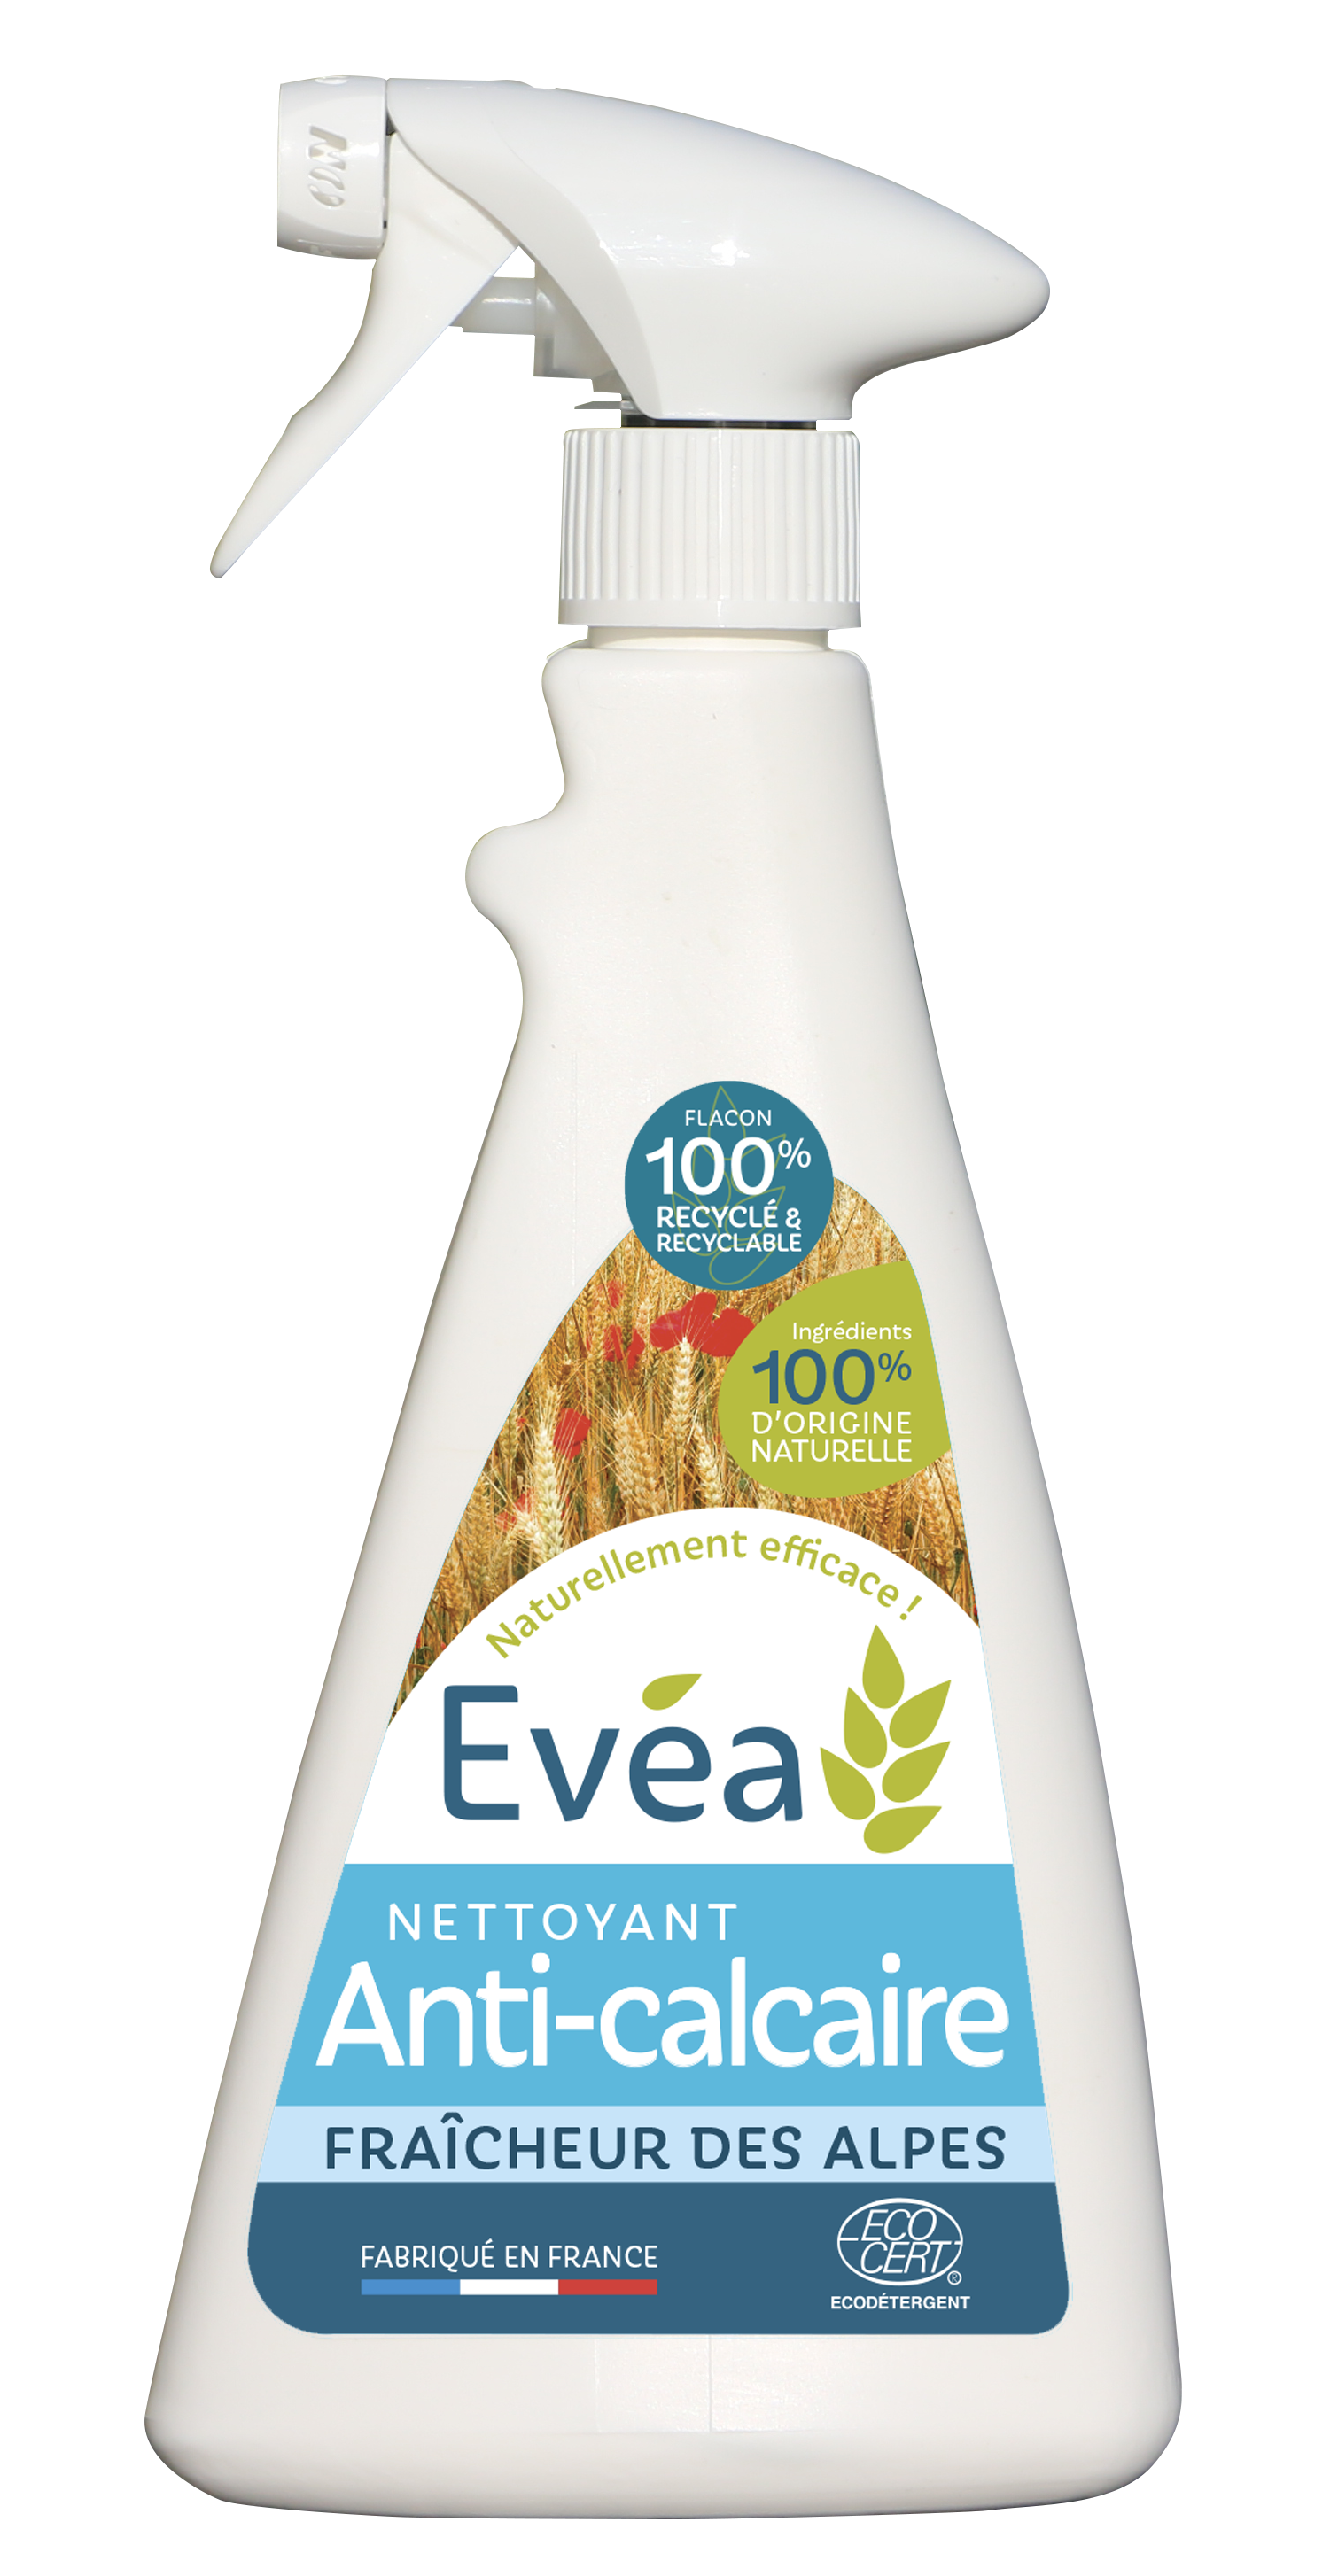 Nettoyant Anti-calcaire Evéa - Produits d'hygiène et de nettoyage agro-sourcés